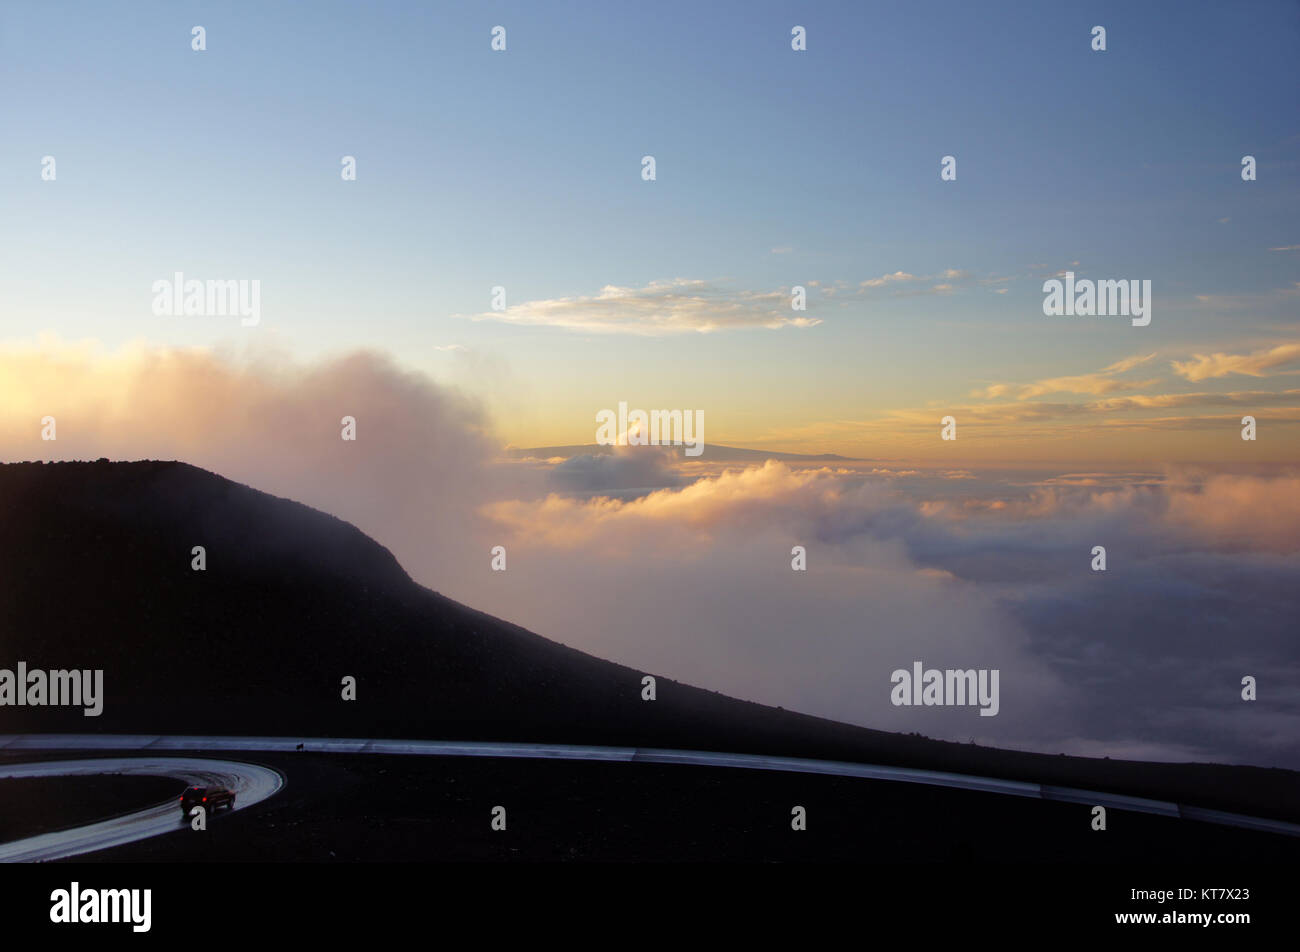 Auf dem Mauna Kea befindet sich das Mauna-Kea-Observatorium, eine Gruppe internationaler Observatorien, die zusammen die größte Sternwarte der Welt bilden. Stock Photo